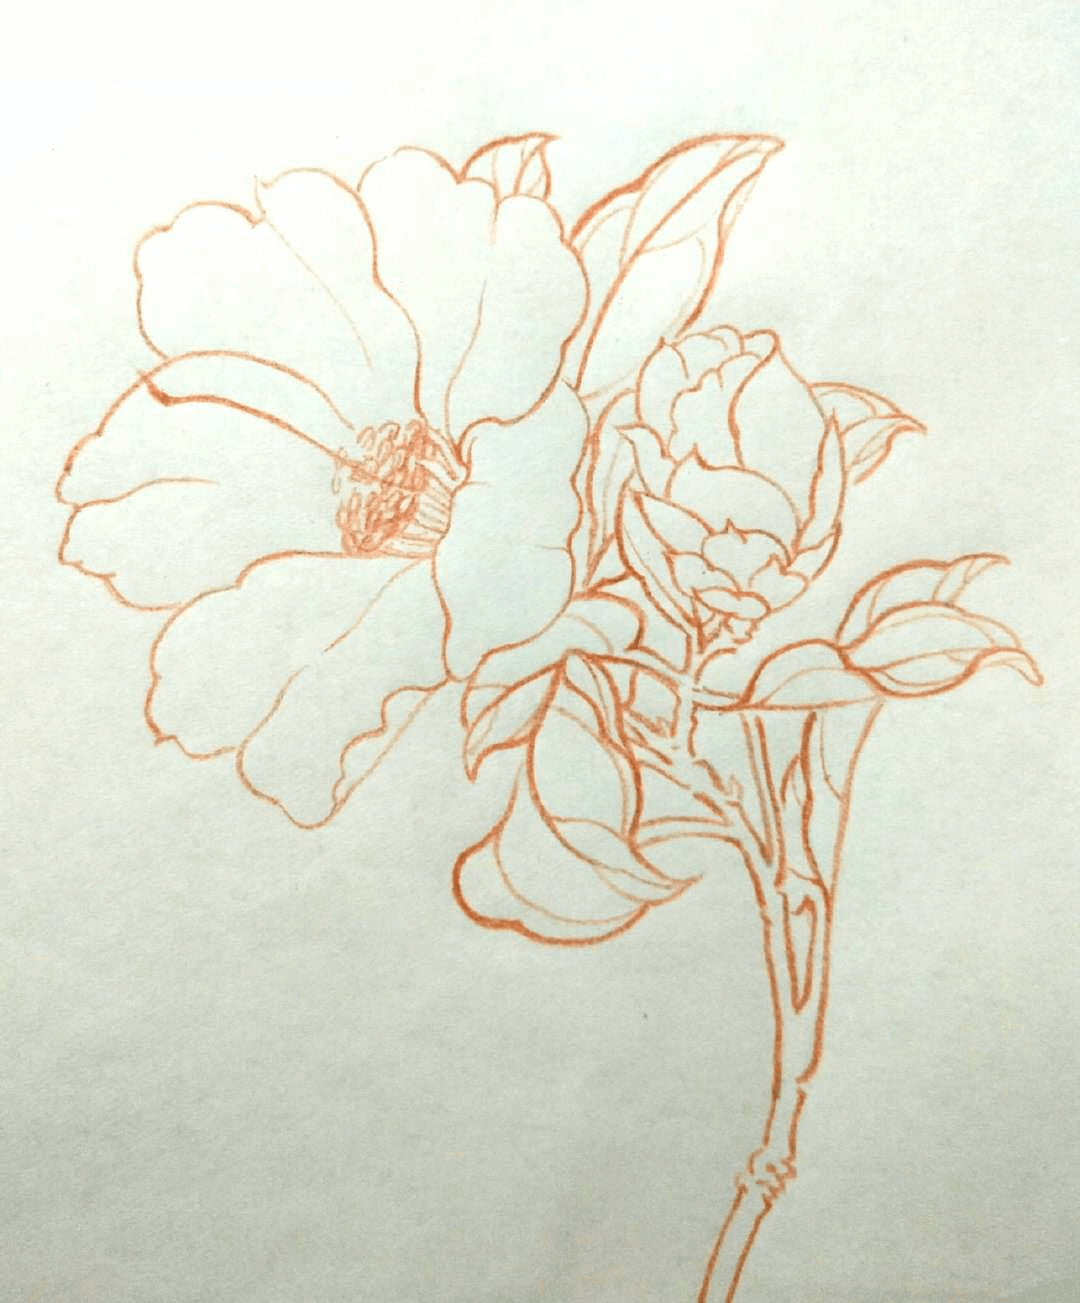 【手绘,线稿】花卉植物线稿,一组彩铅手绘花卉